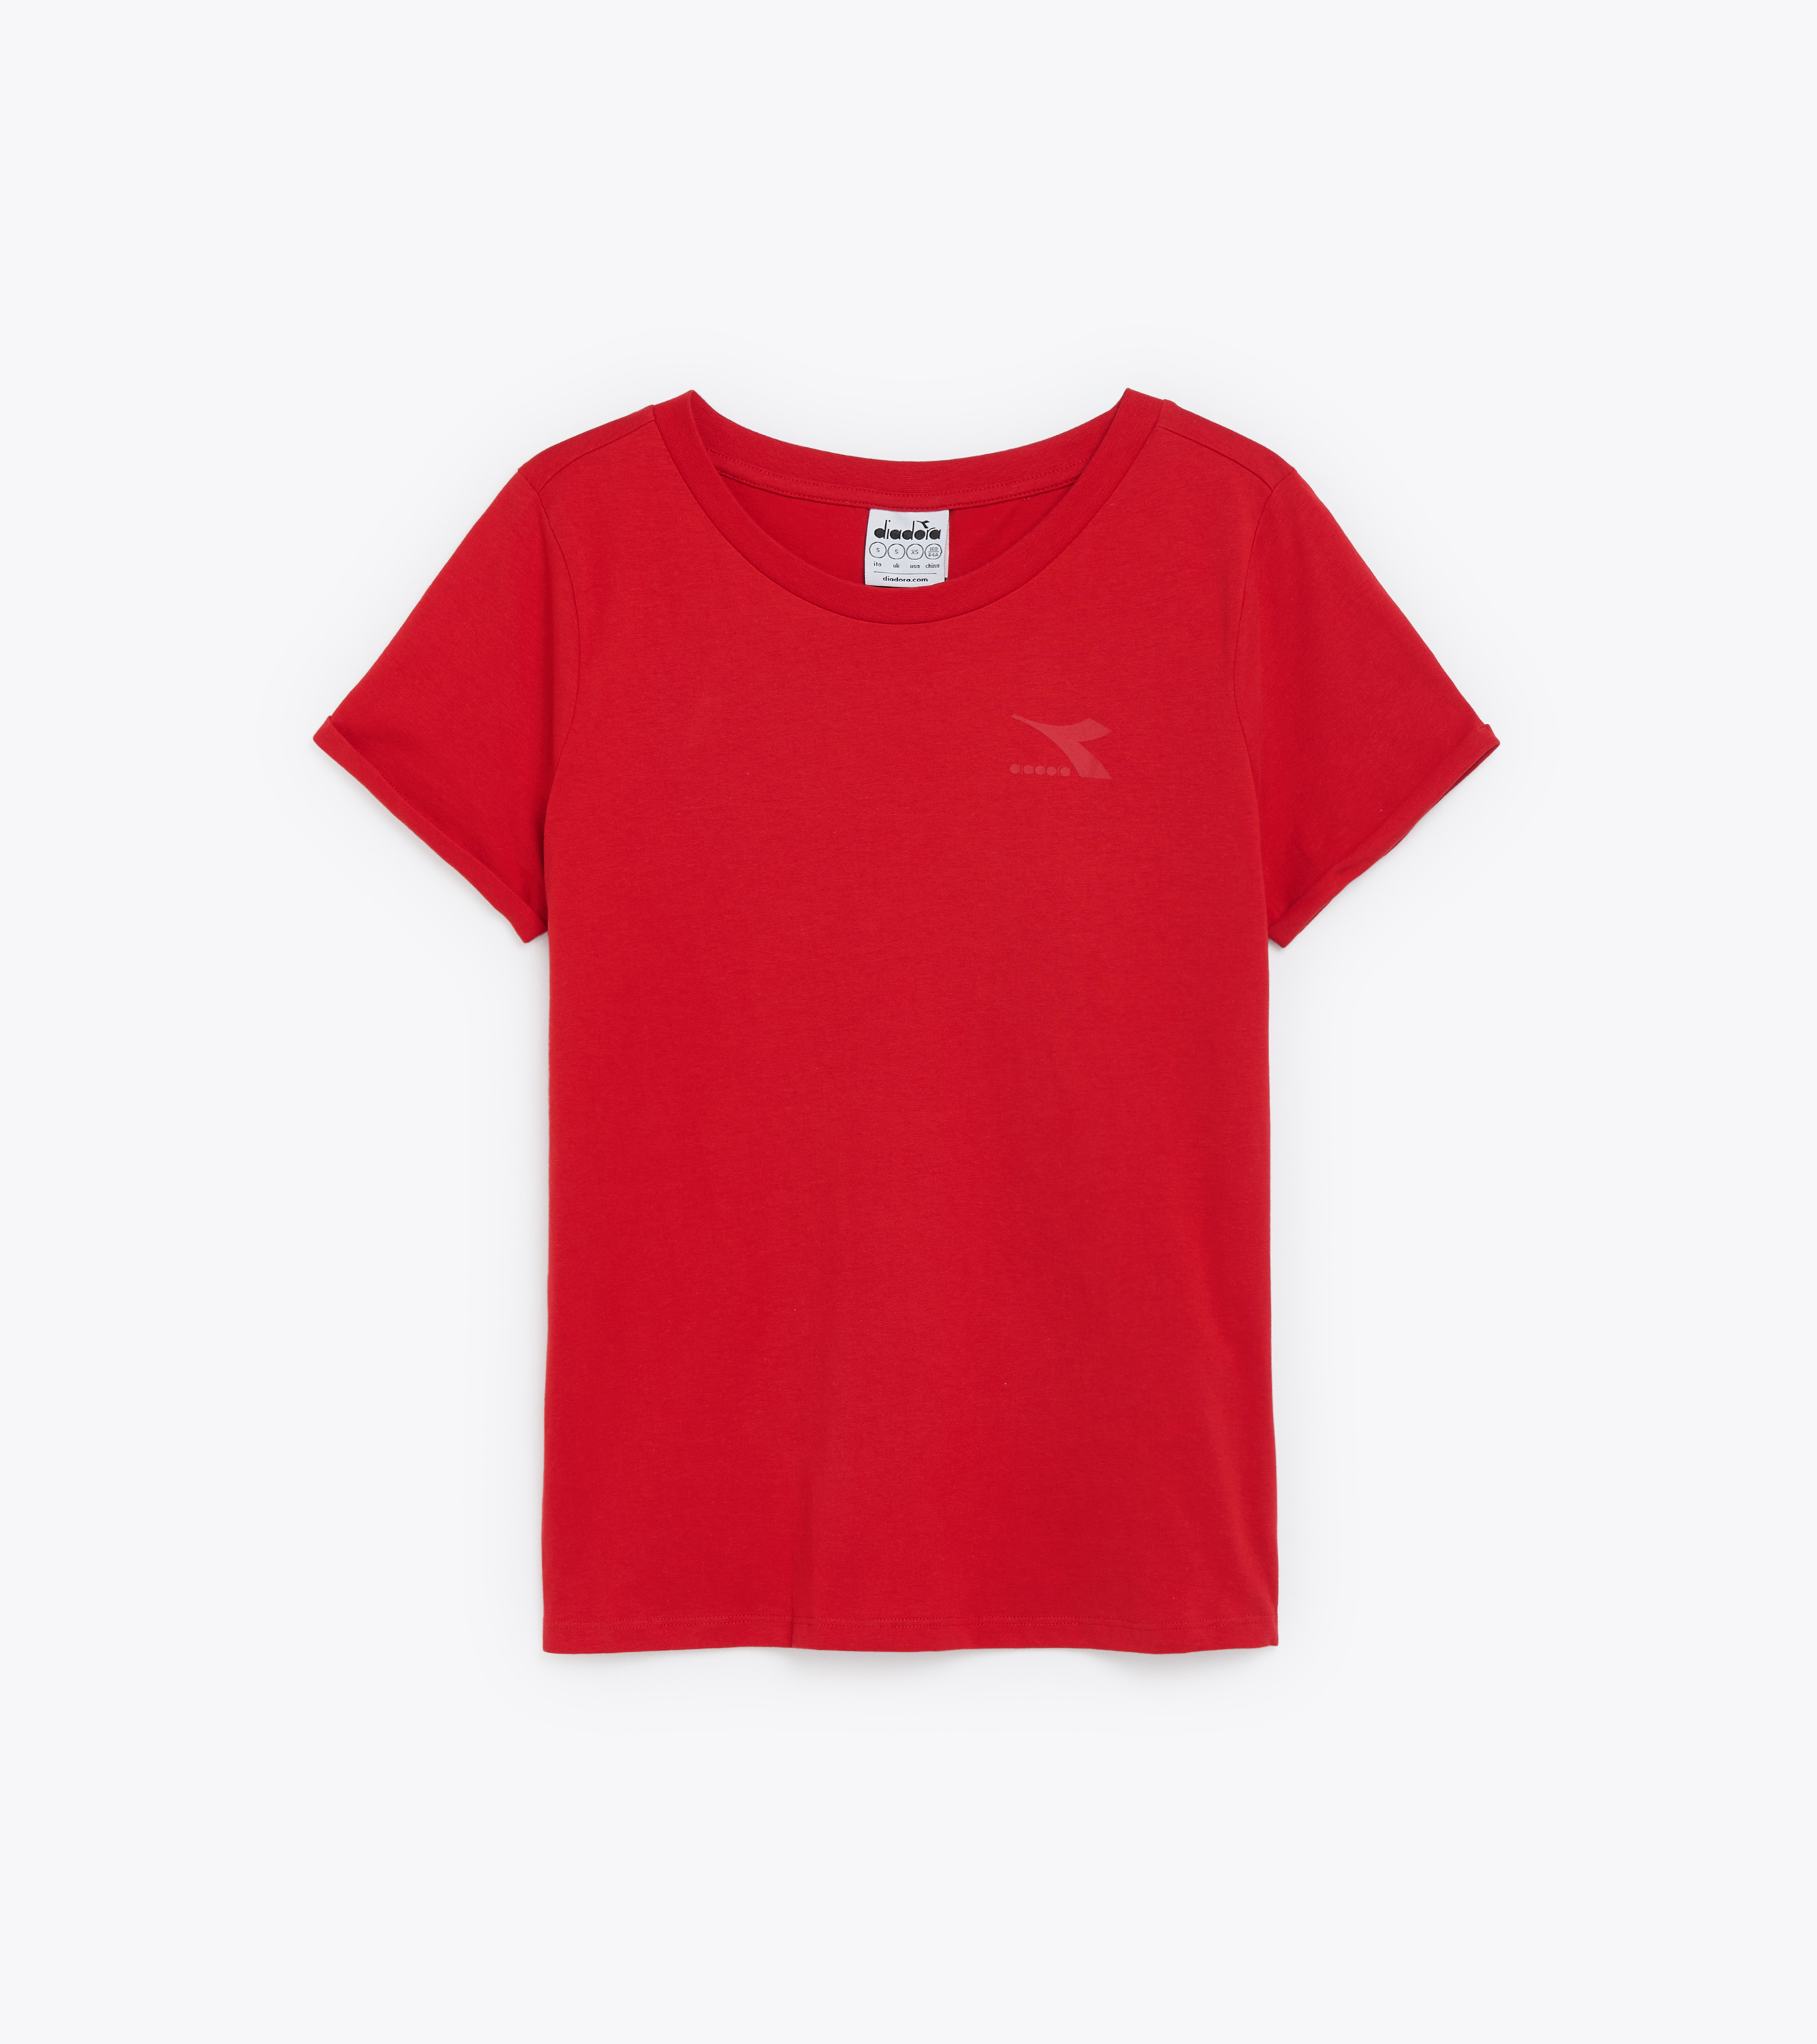 L. SS CORE TEE Polyester running T-shirt - Women - Diadora Online Store CA